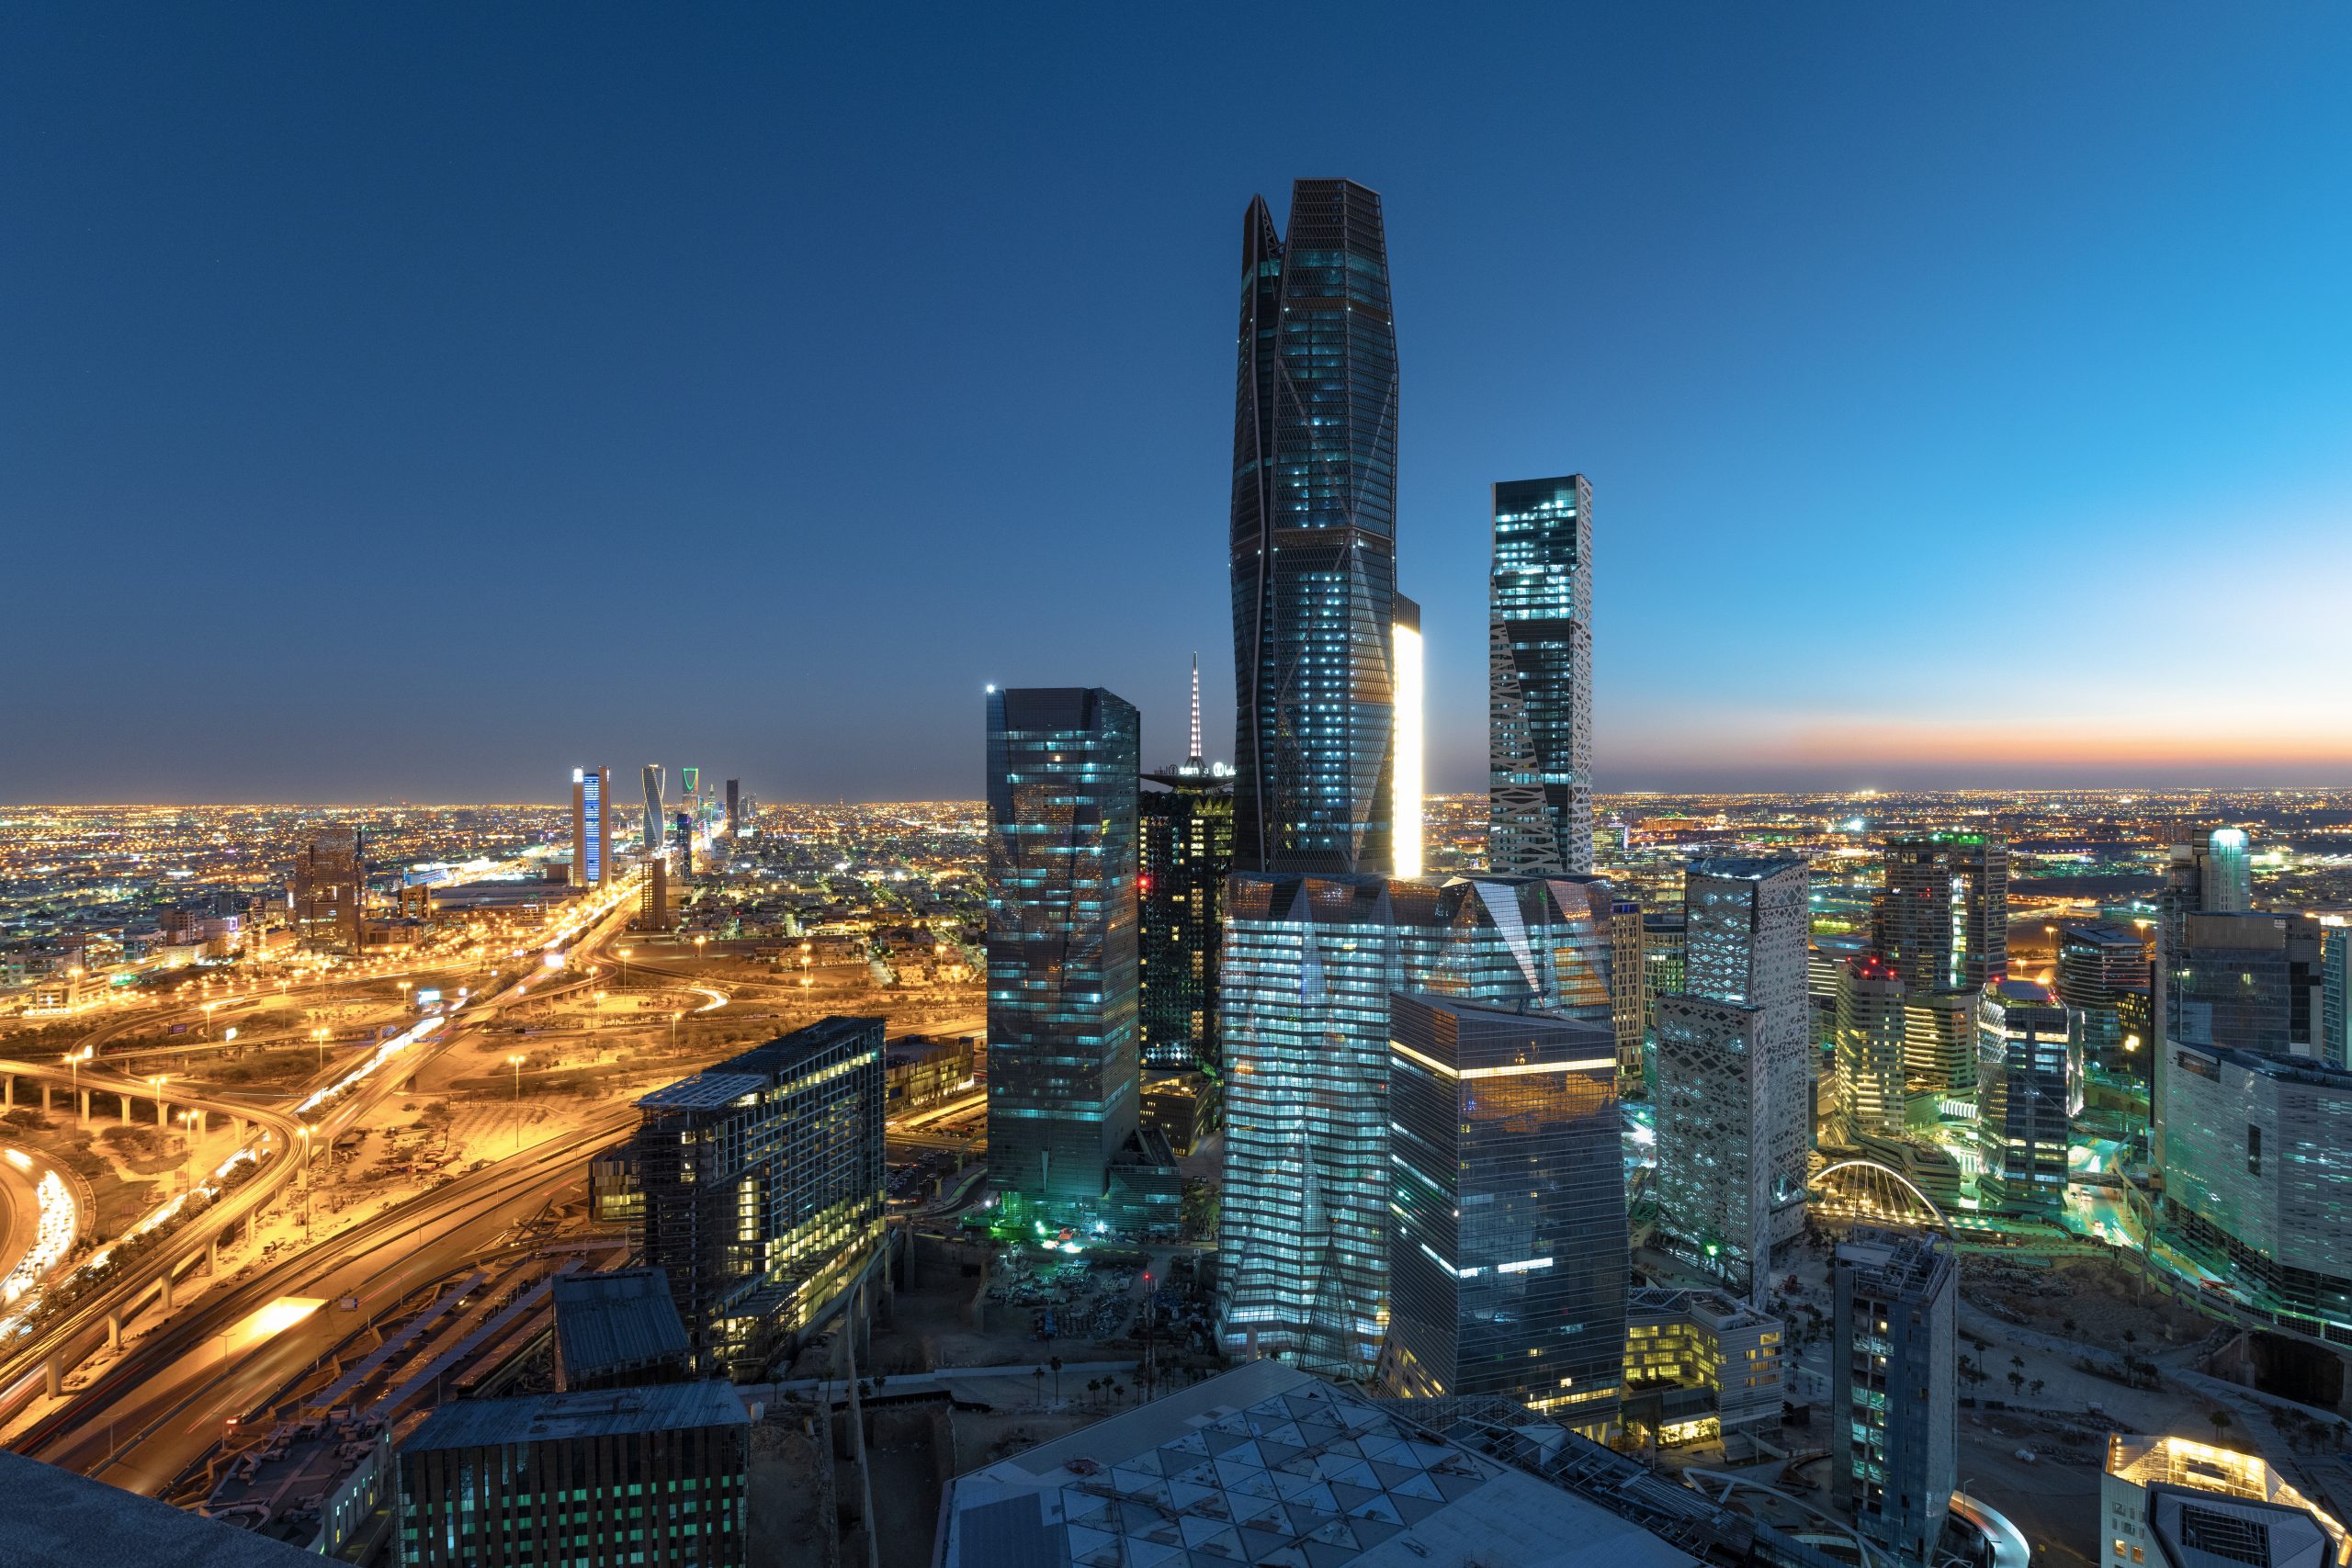 السعودية تبدأ حملتها للترويج لاستضافة معرض "إكسبو الدولي 2030" | صحيفة الاقتصادية